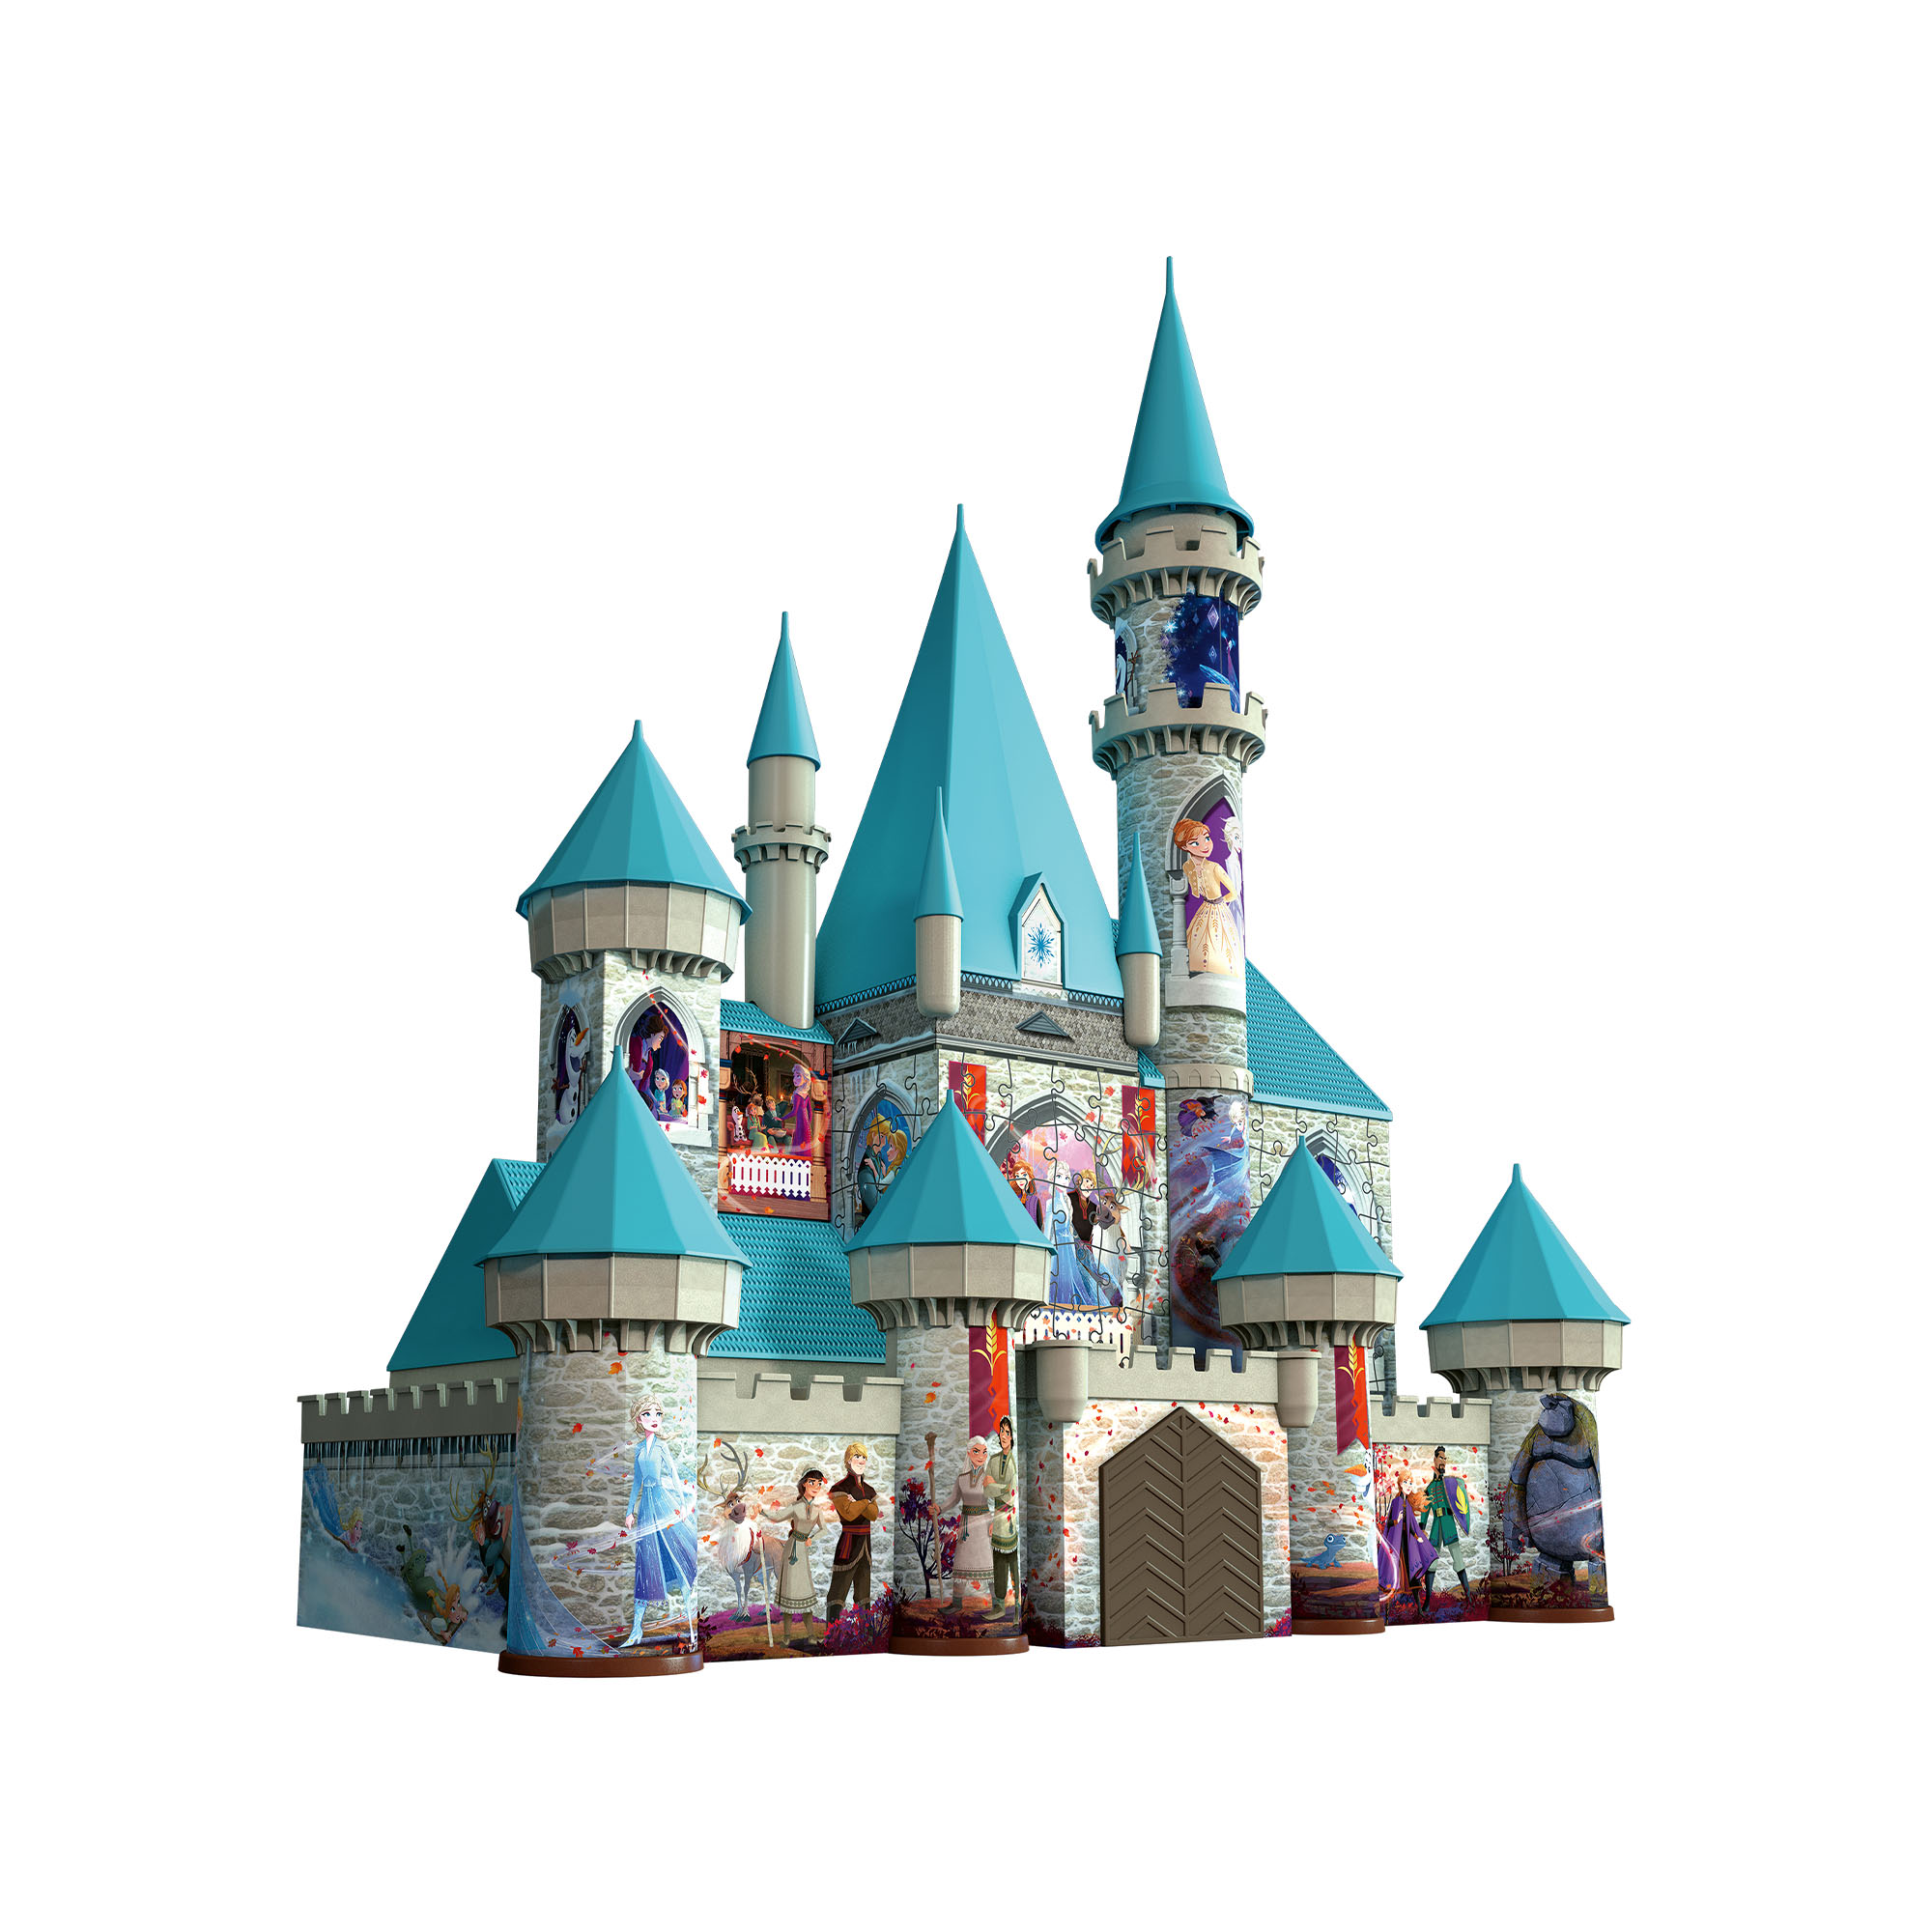 Ravensburger 3d Puzzle Building Maxi - 11156 - Frozen Ice Castle, , large